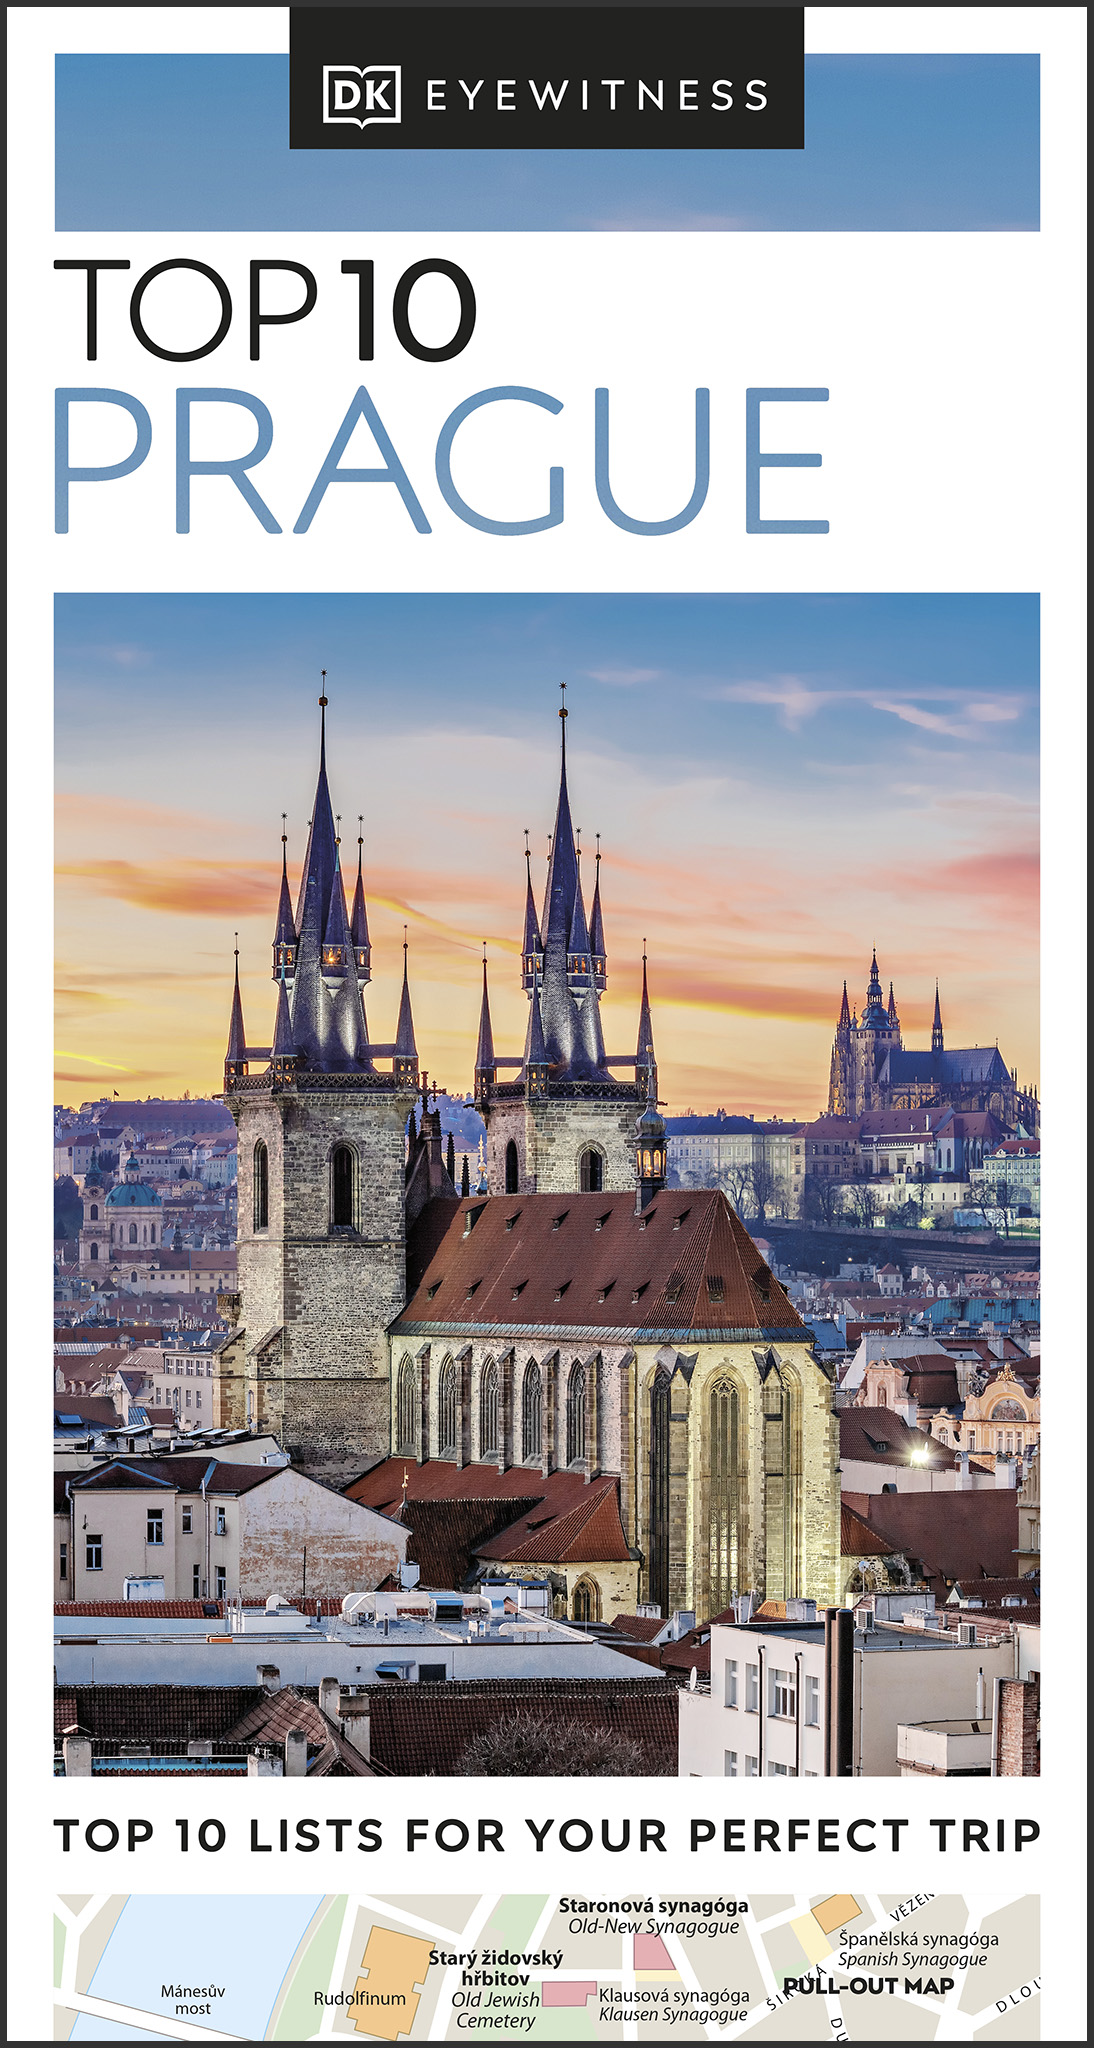 DK Eyewitness Top 10 Prague Pocket Travel Guide - photo 1